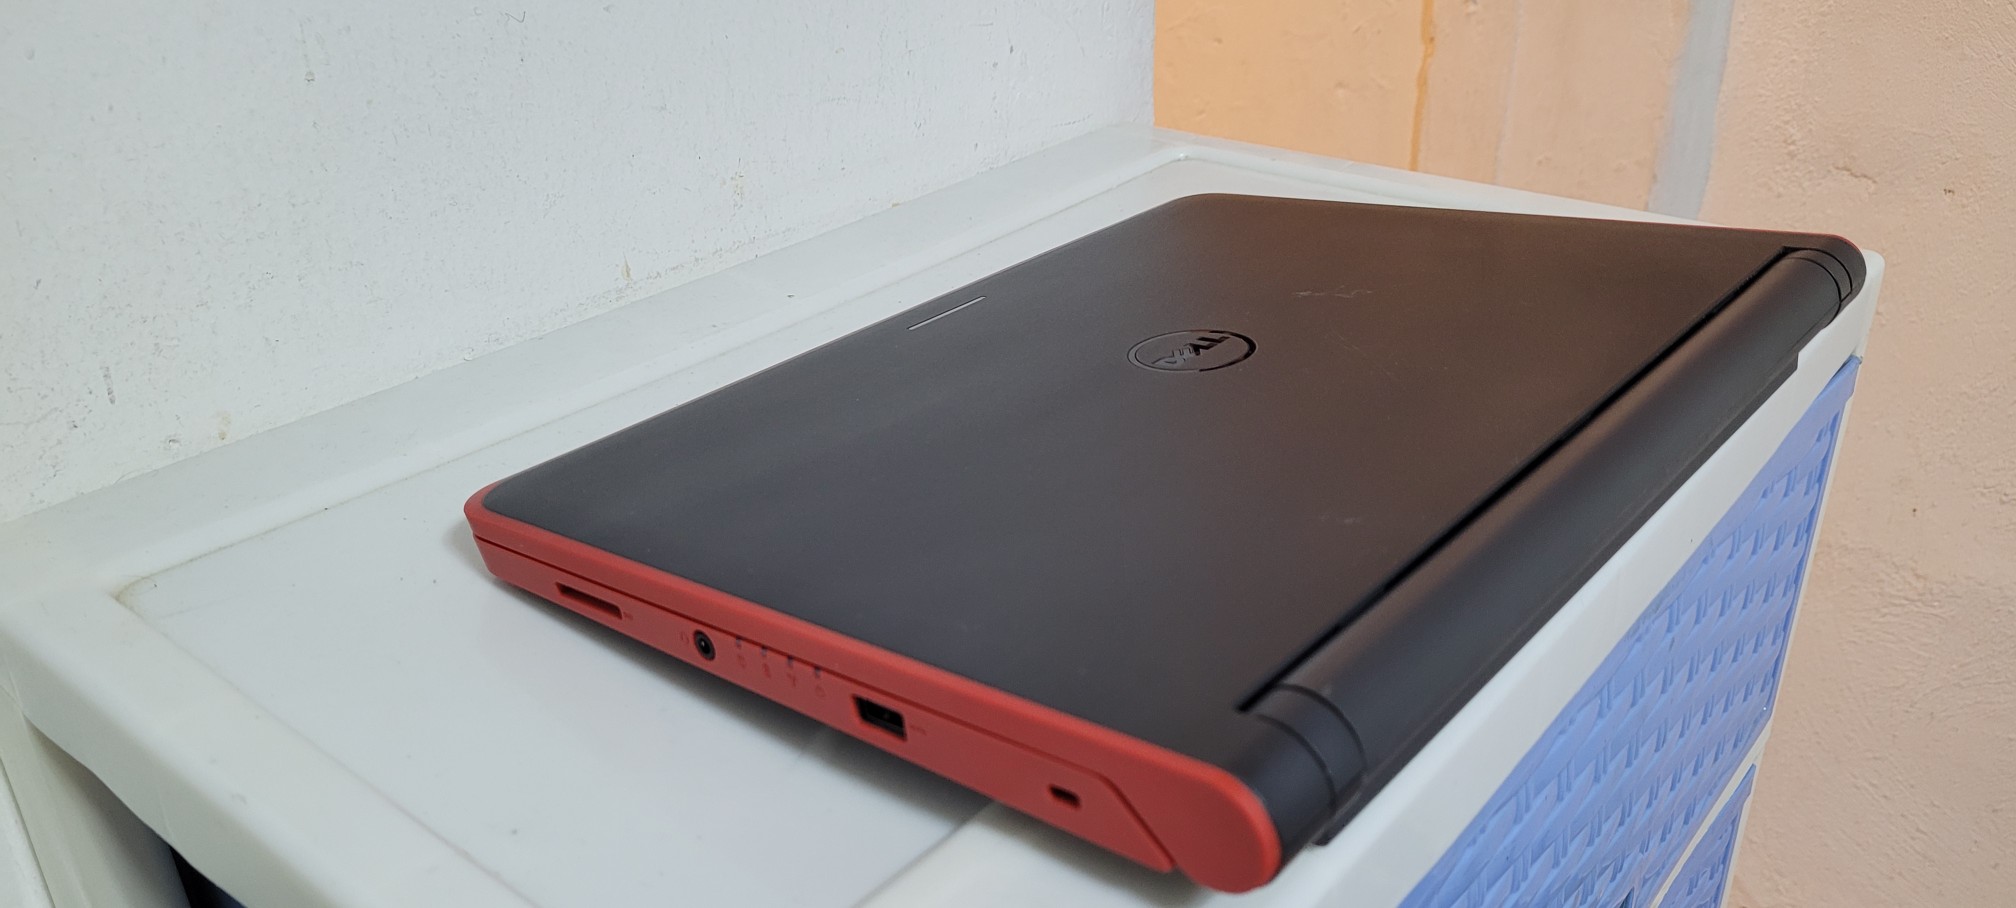 computadoras y laptops - Laptop Dell 14 Pulg Core i3 Ram 8gb Disco 128gb SSD Solido 2